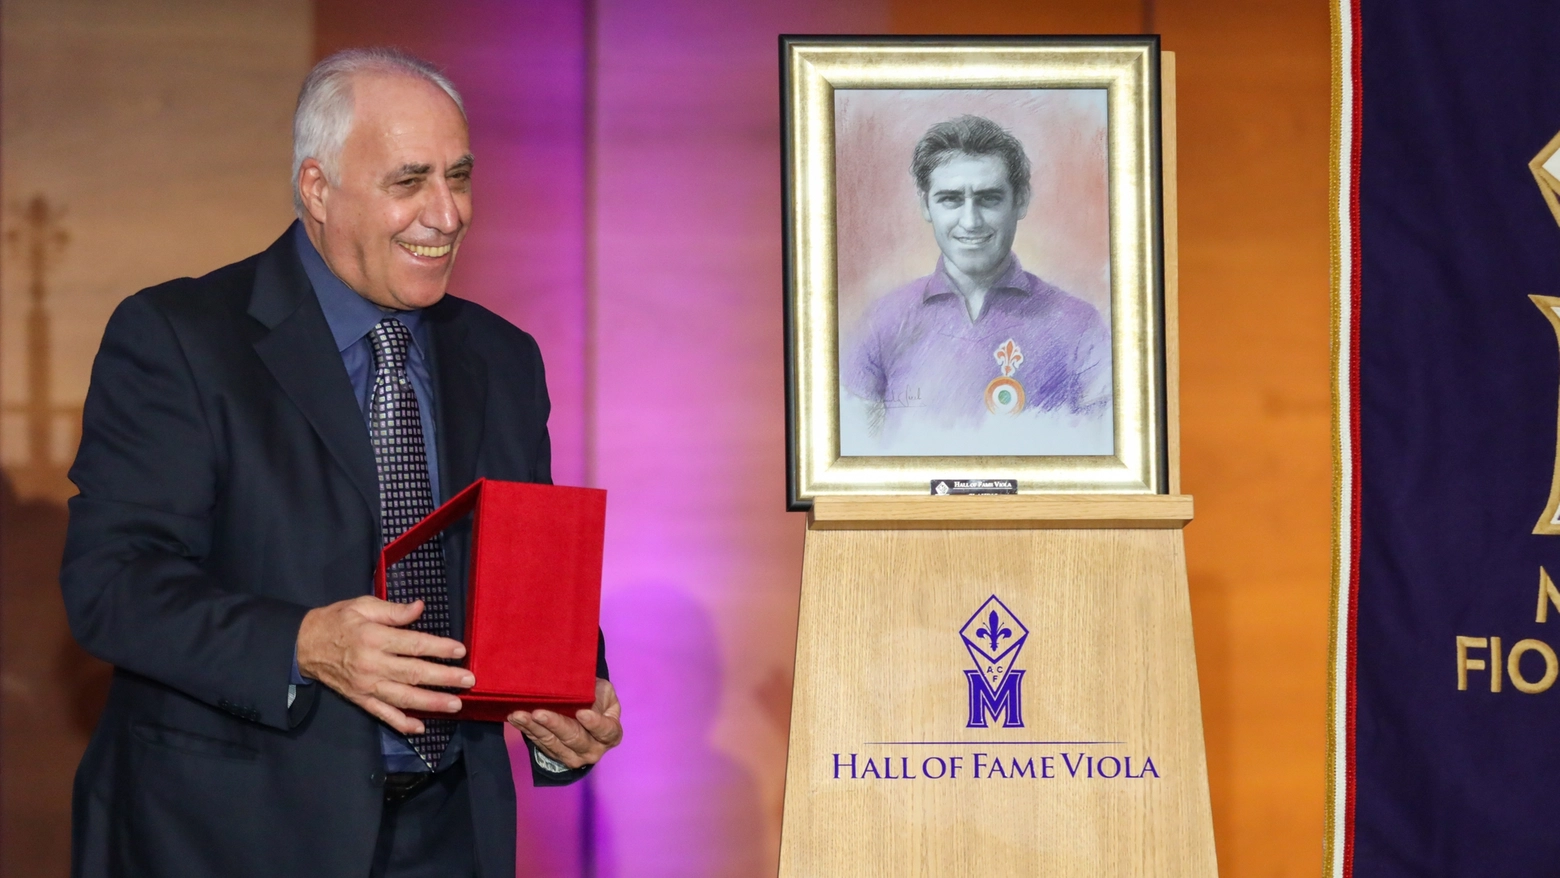 Desolati al suo ingresso nella "Hall of Fame" del Museo Fiorentina (Germogli)